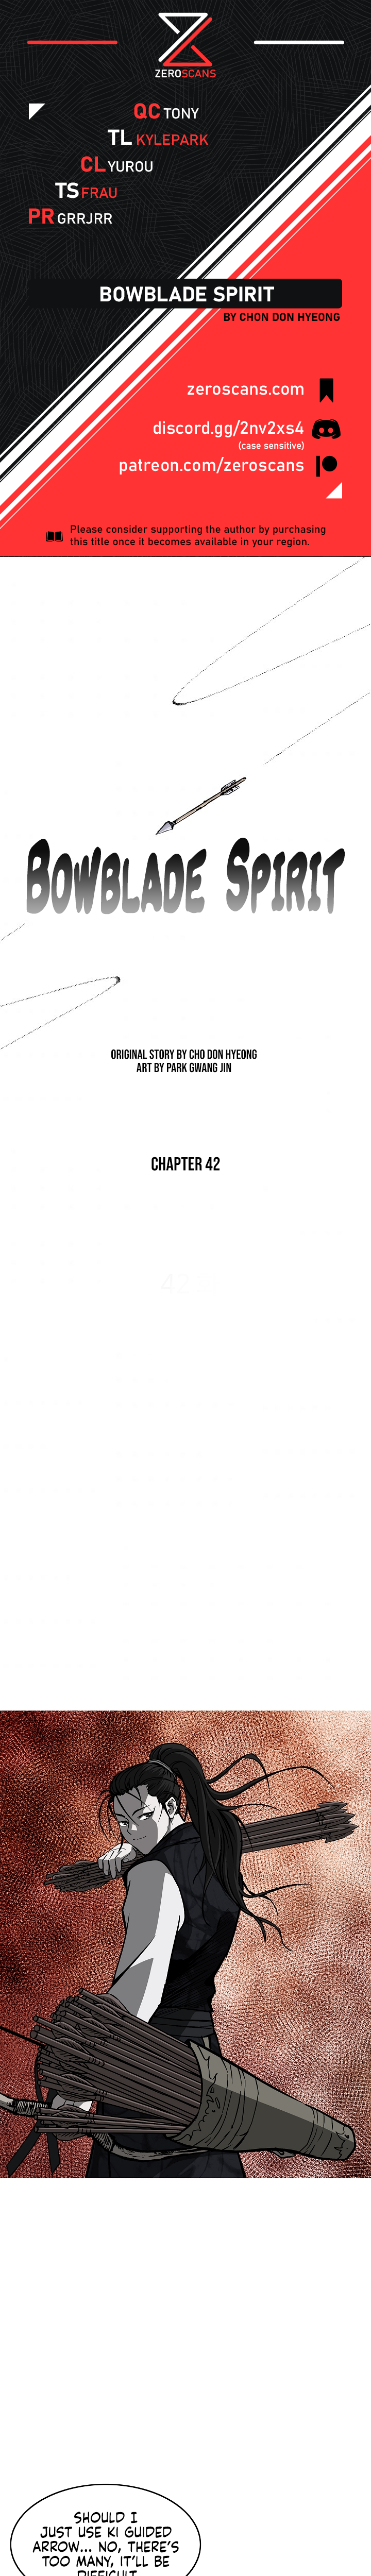 Bowblade Spirit - Chapter 3730 - Image 1